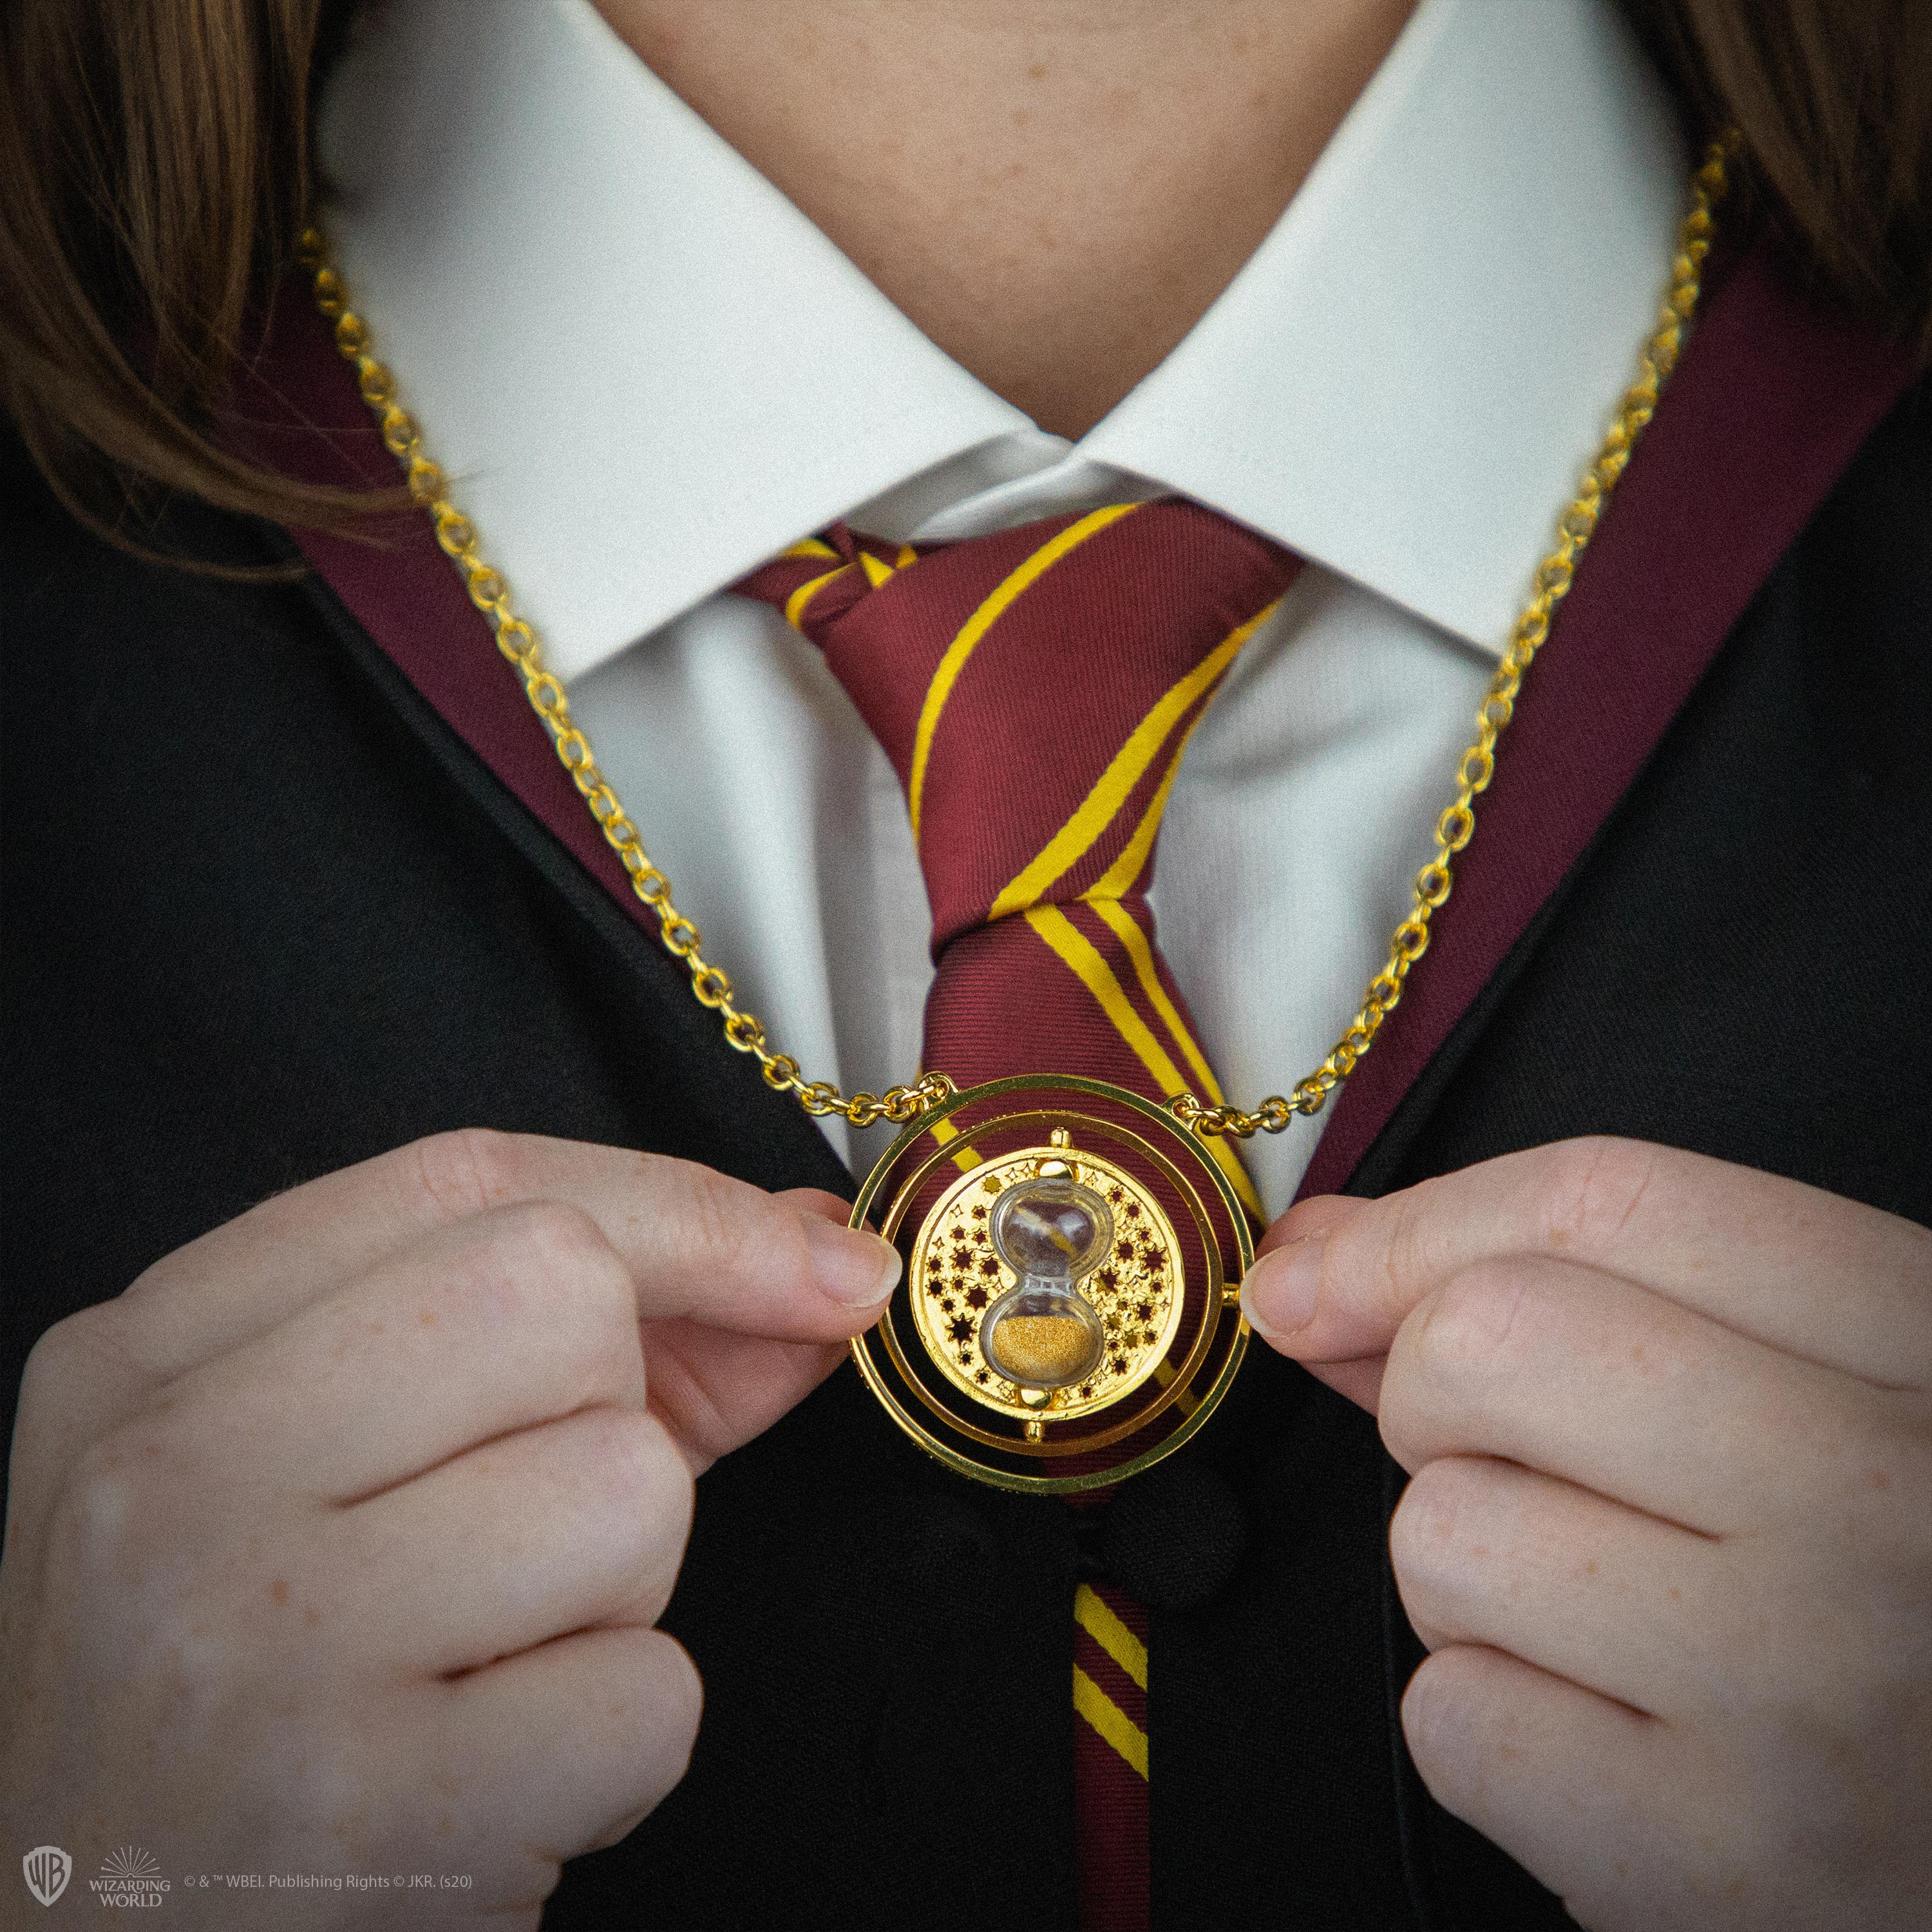 30mm Time Turner Necklace - Boutique Harry Potter